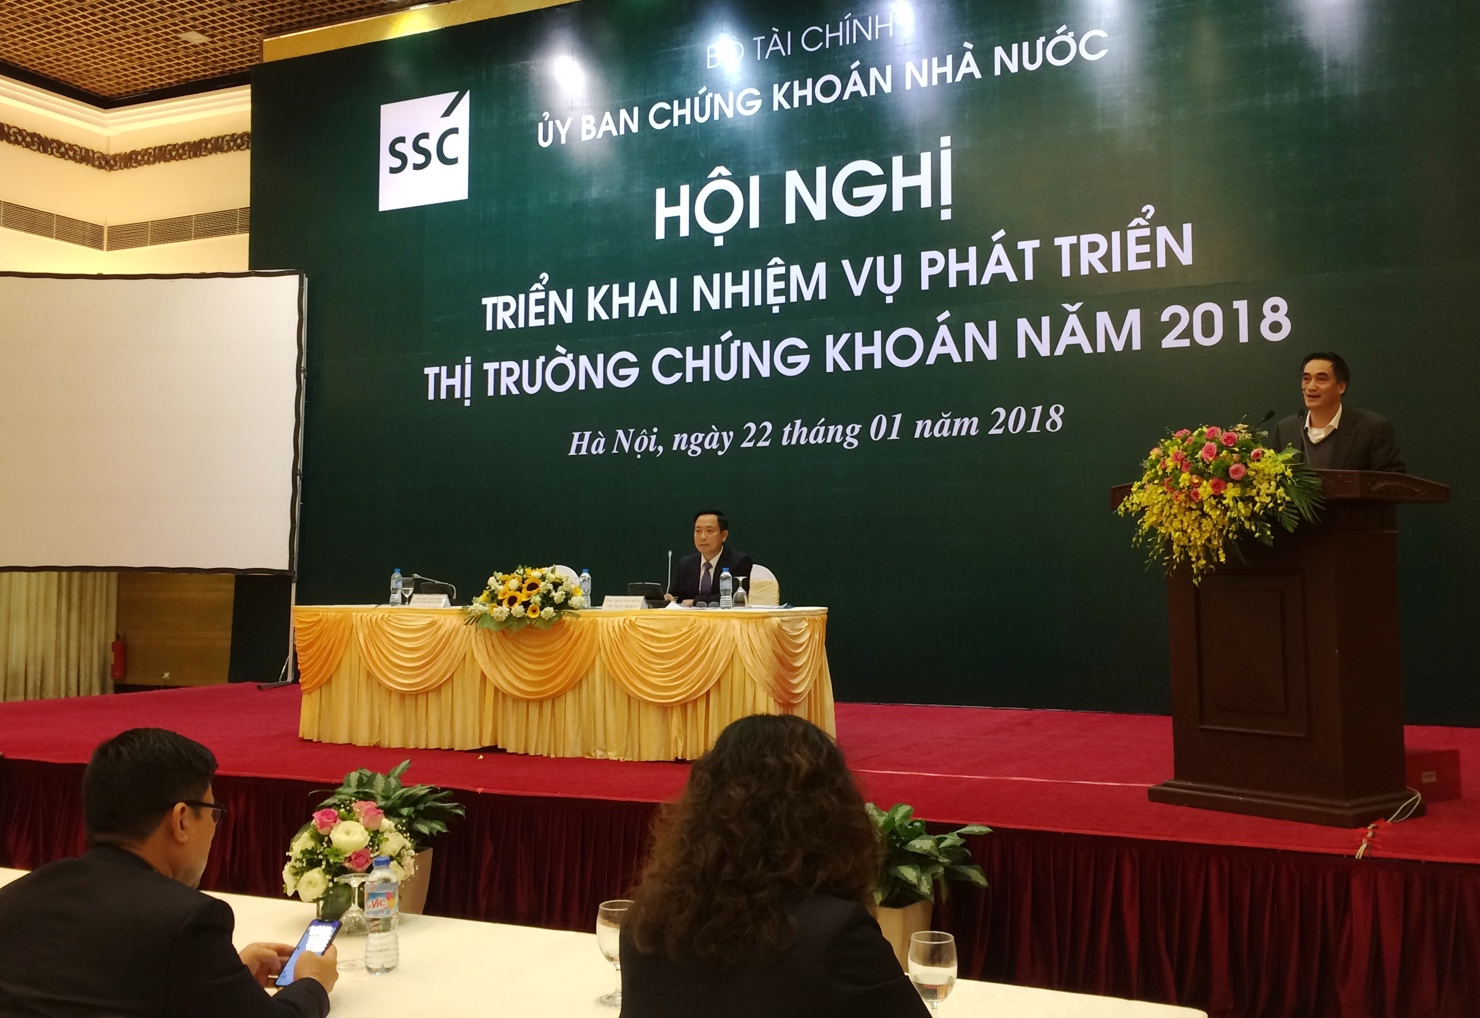 Thứ trưởng Bộ Tài chính Trần Xuân Hà phát biểu chỉ đạo tại Hội nghị triển khai nhiệm vụ phát triển thị trường chứng khoán năm 2018, ngày 22/1/2018.